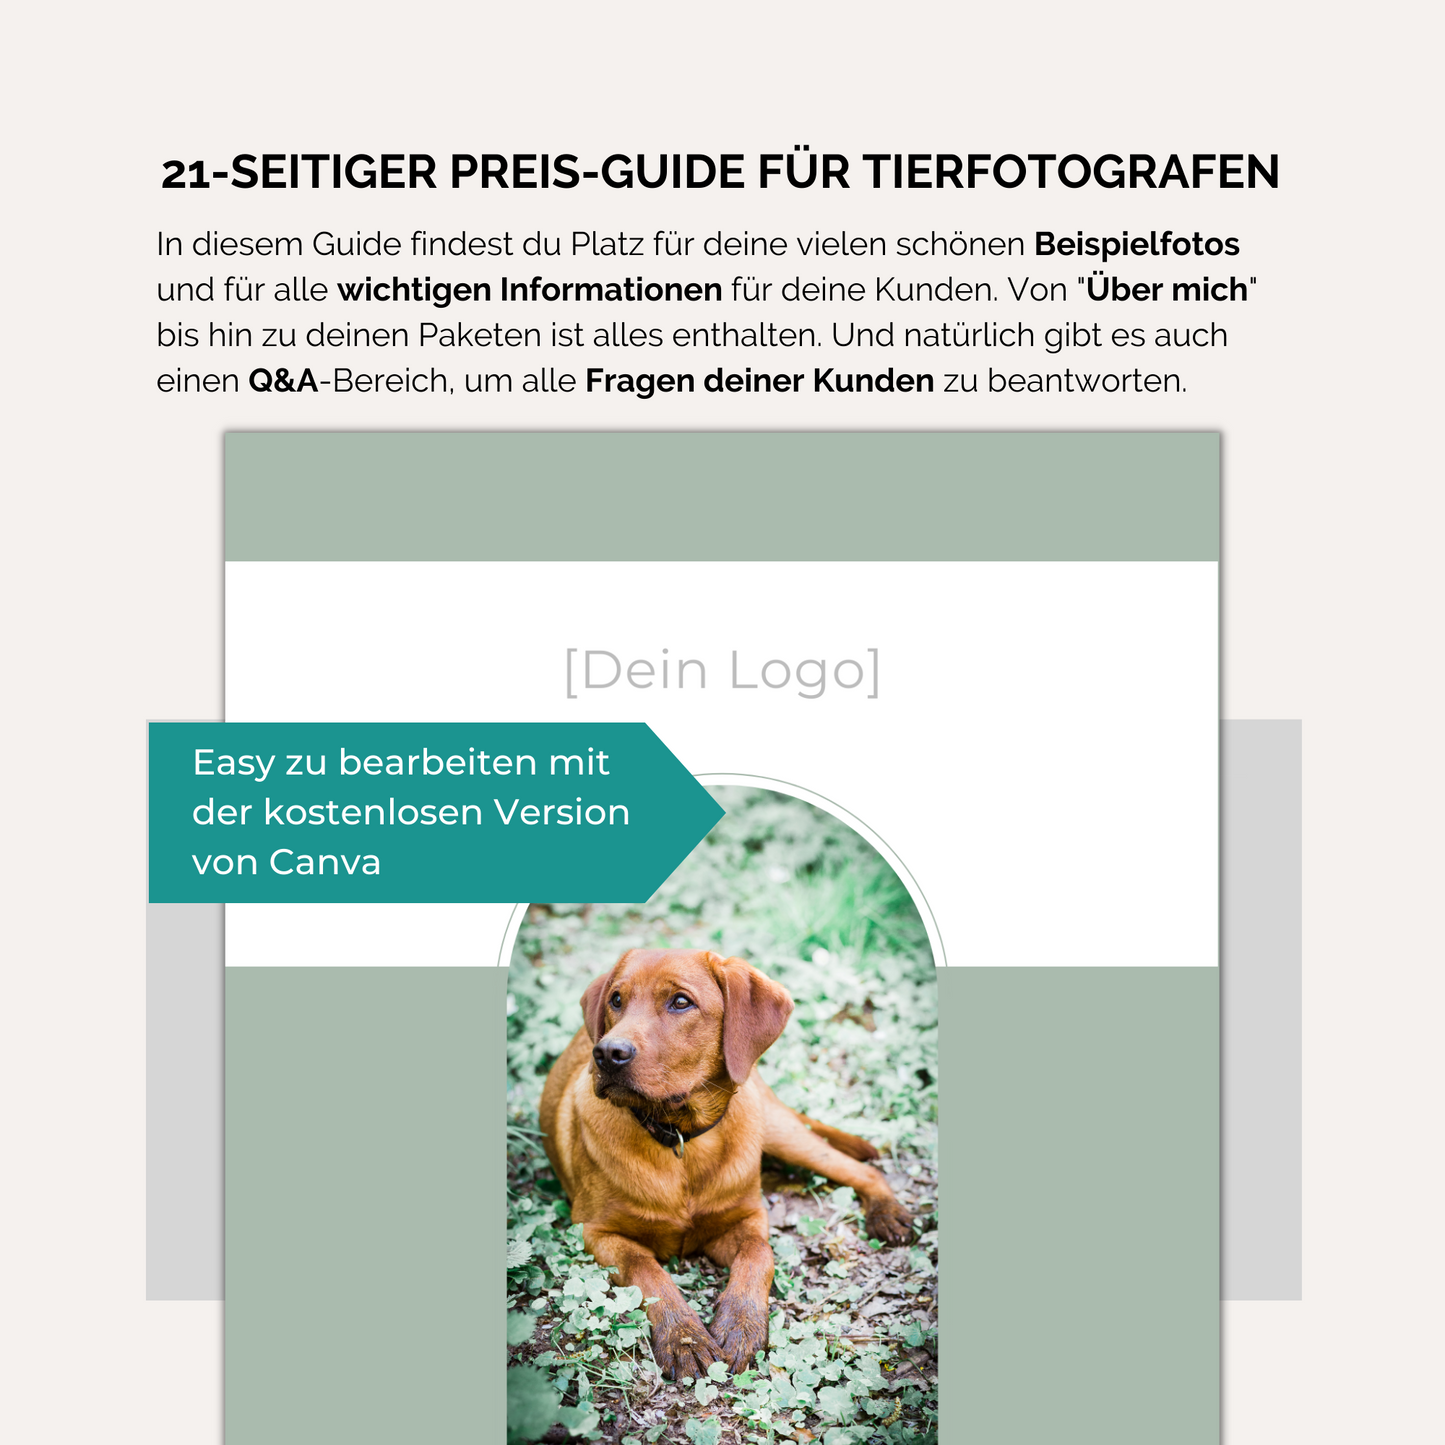 21-seitiger Preis-Guide für Tierfotografen